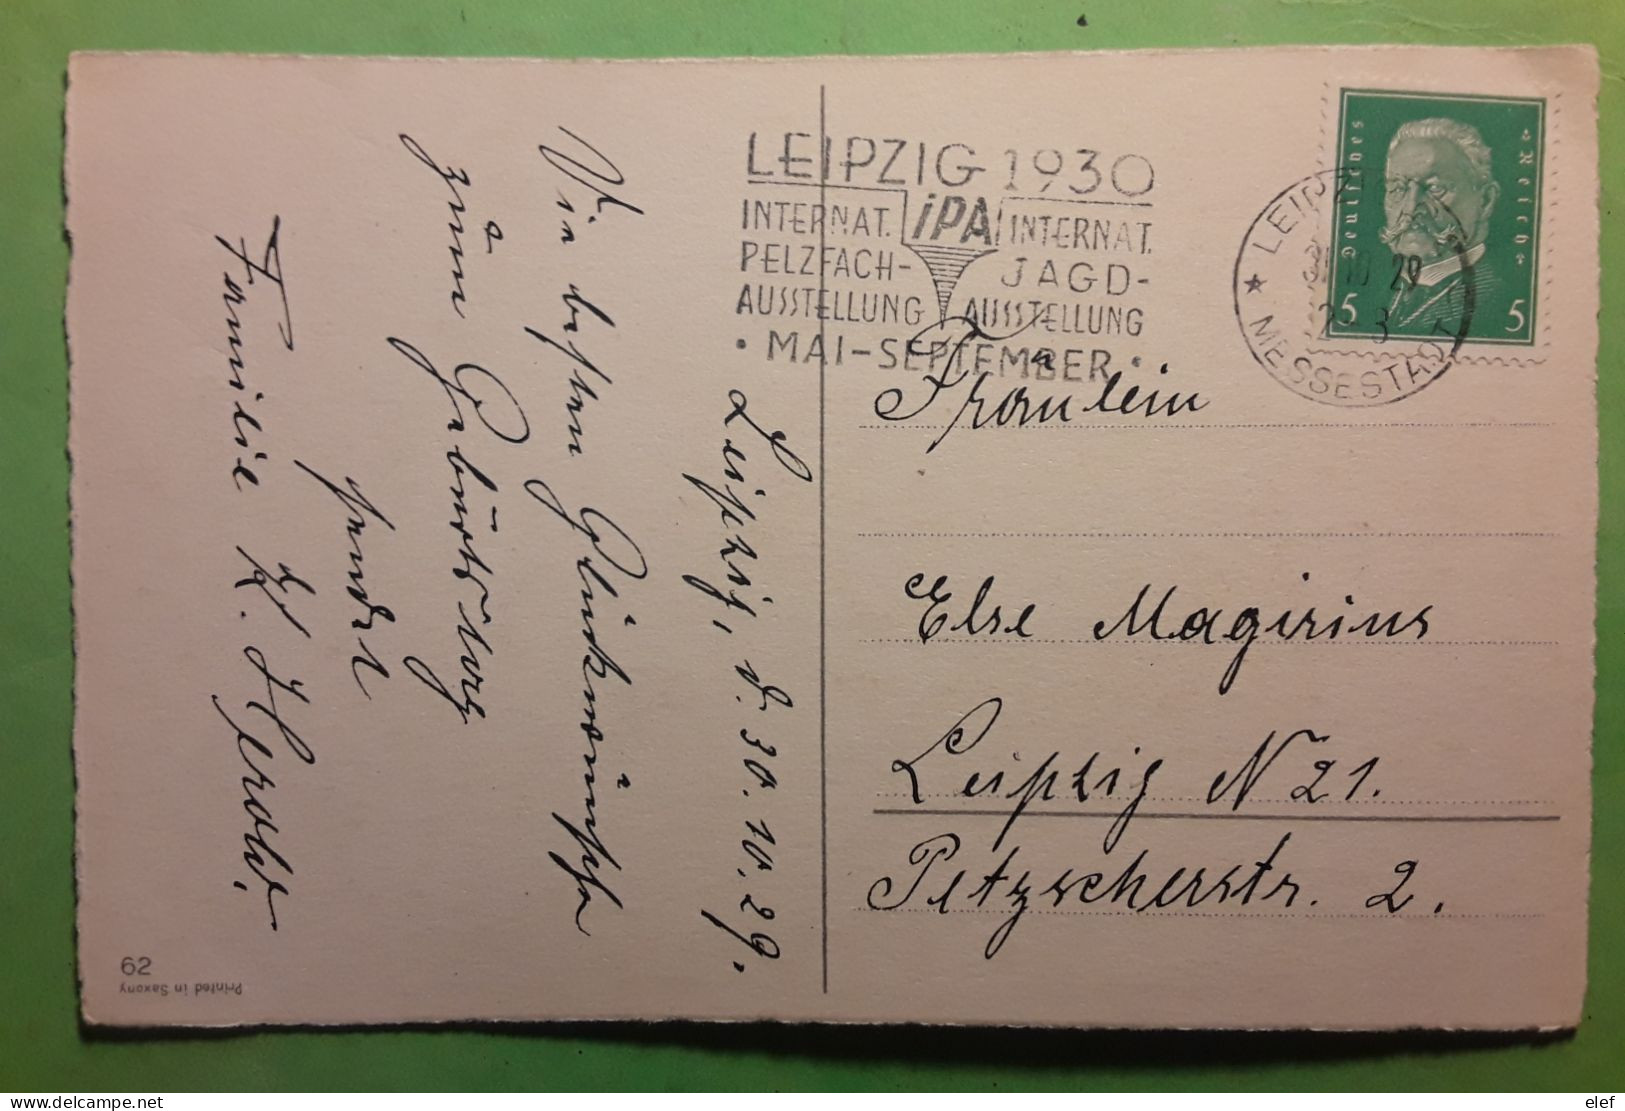 Flamme Chasse   IPA Internat PELZFACH JAGD AUSTELLUNG LEIPZIG 1930,Deutsches Reich Postkarte Gluckwunsch Z Geburtstage - Waffenschiessen